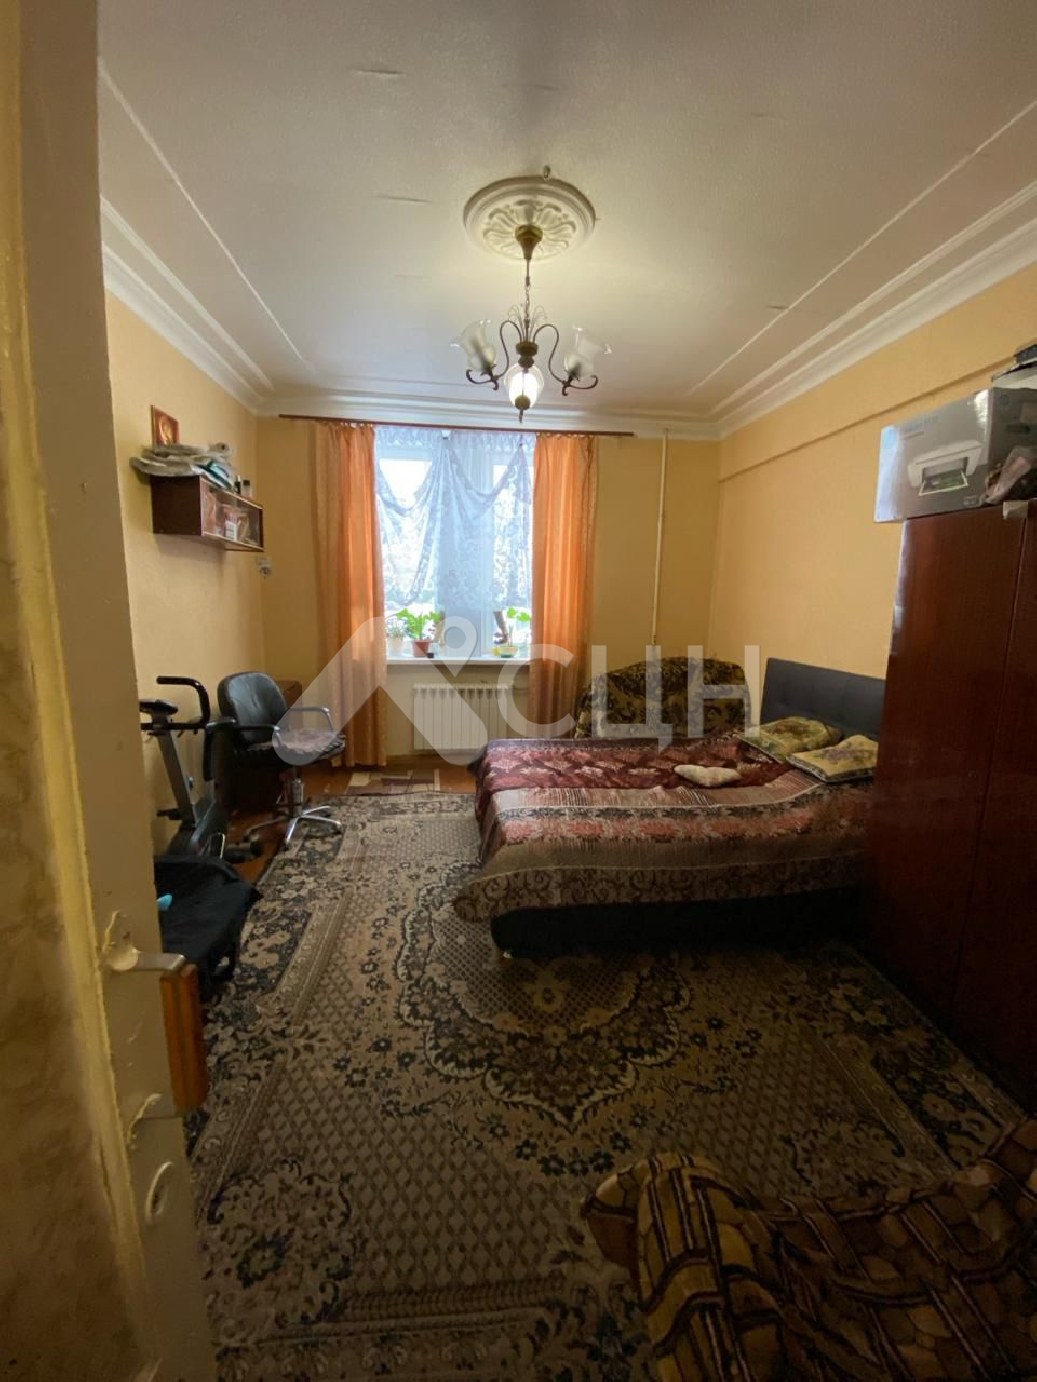 циан саров недвижимость
: Г. Саров, Шевченко ул. д. 20, 3-комн квартира, этаж 1 из 3, продажа.